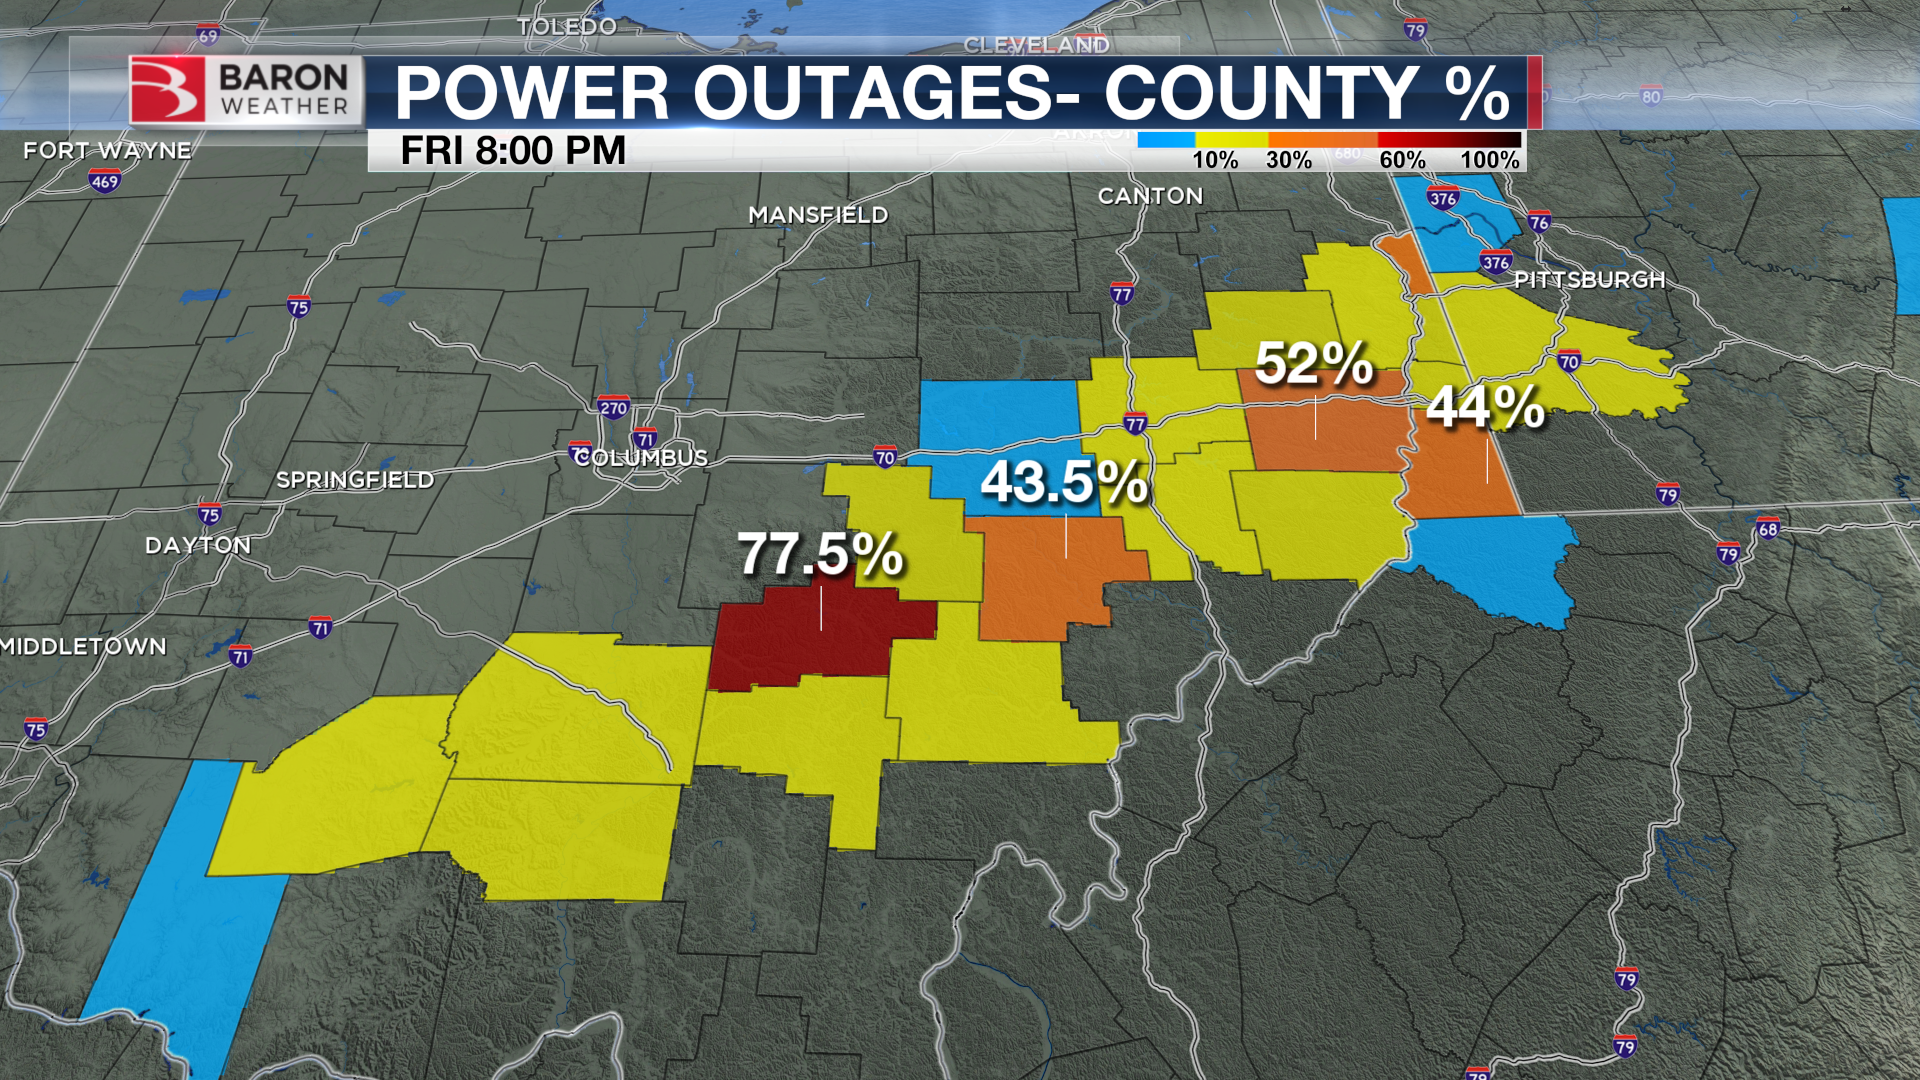 Fechamento do percentual de energia fora do condado